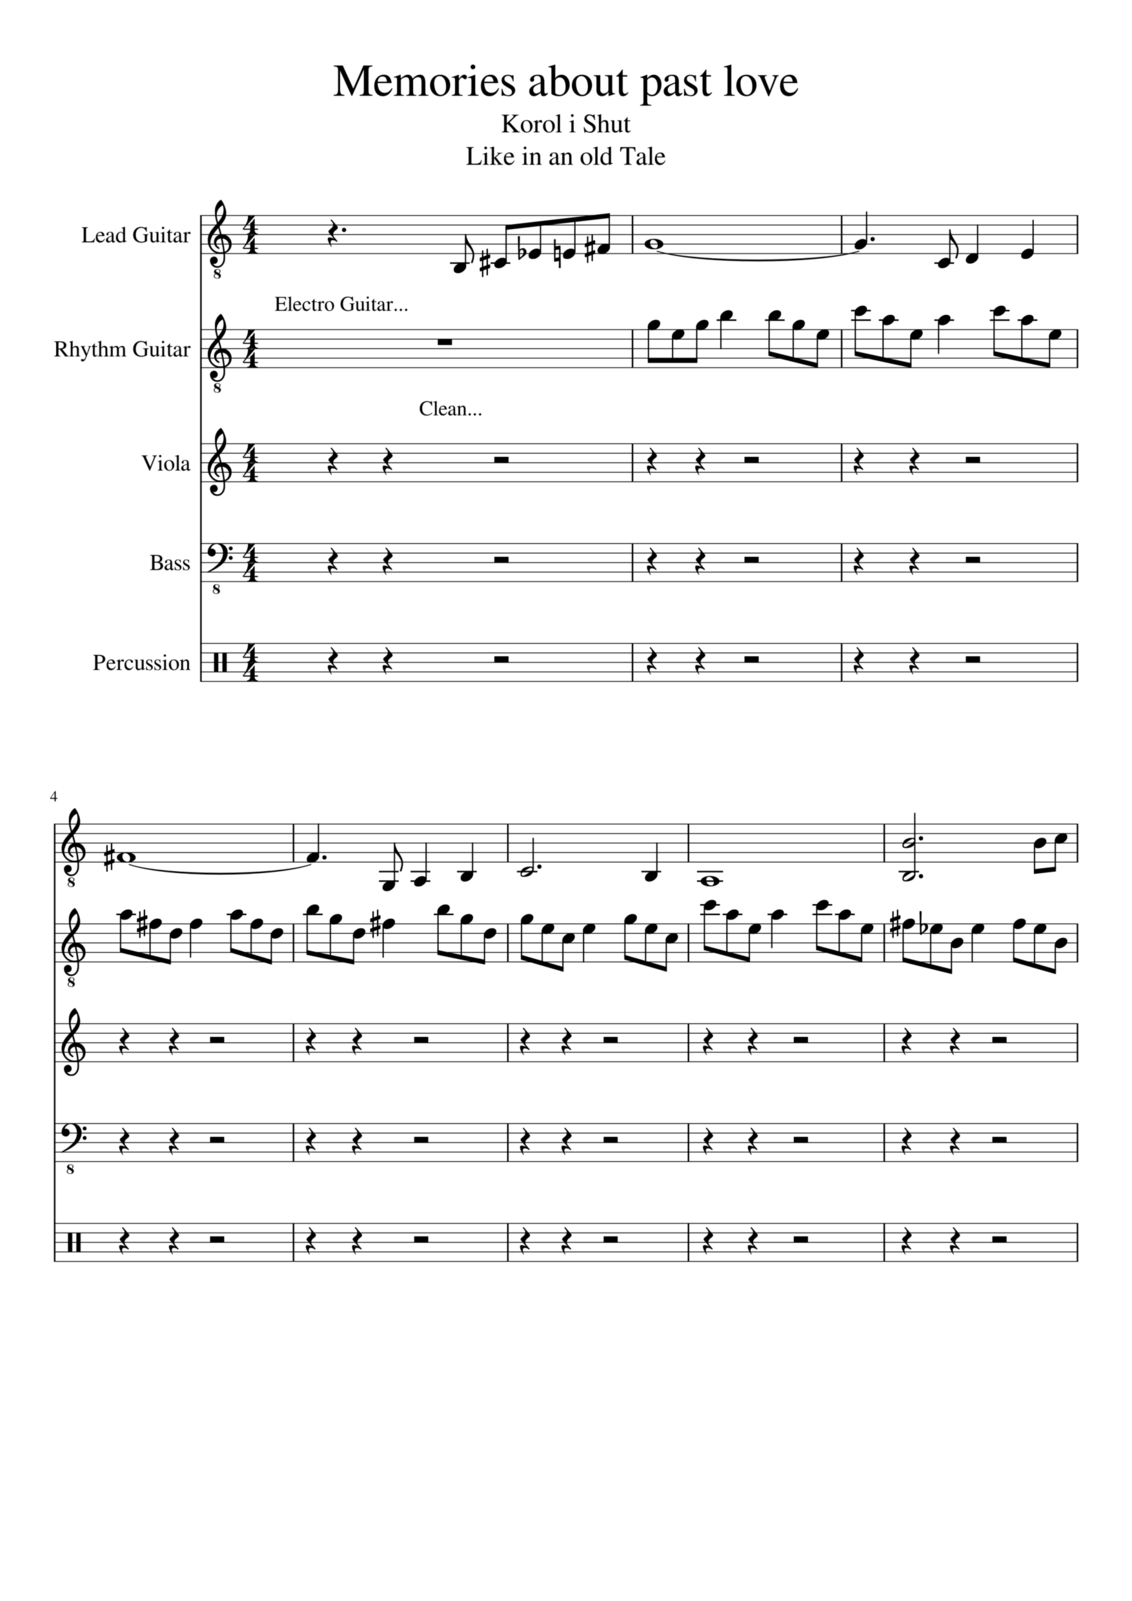 Vospominaniya o byiloy lyubvi slide, Image 1